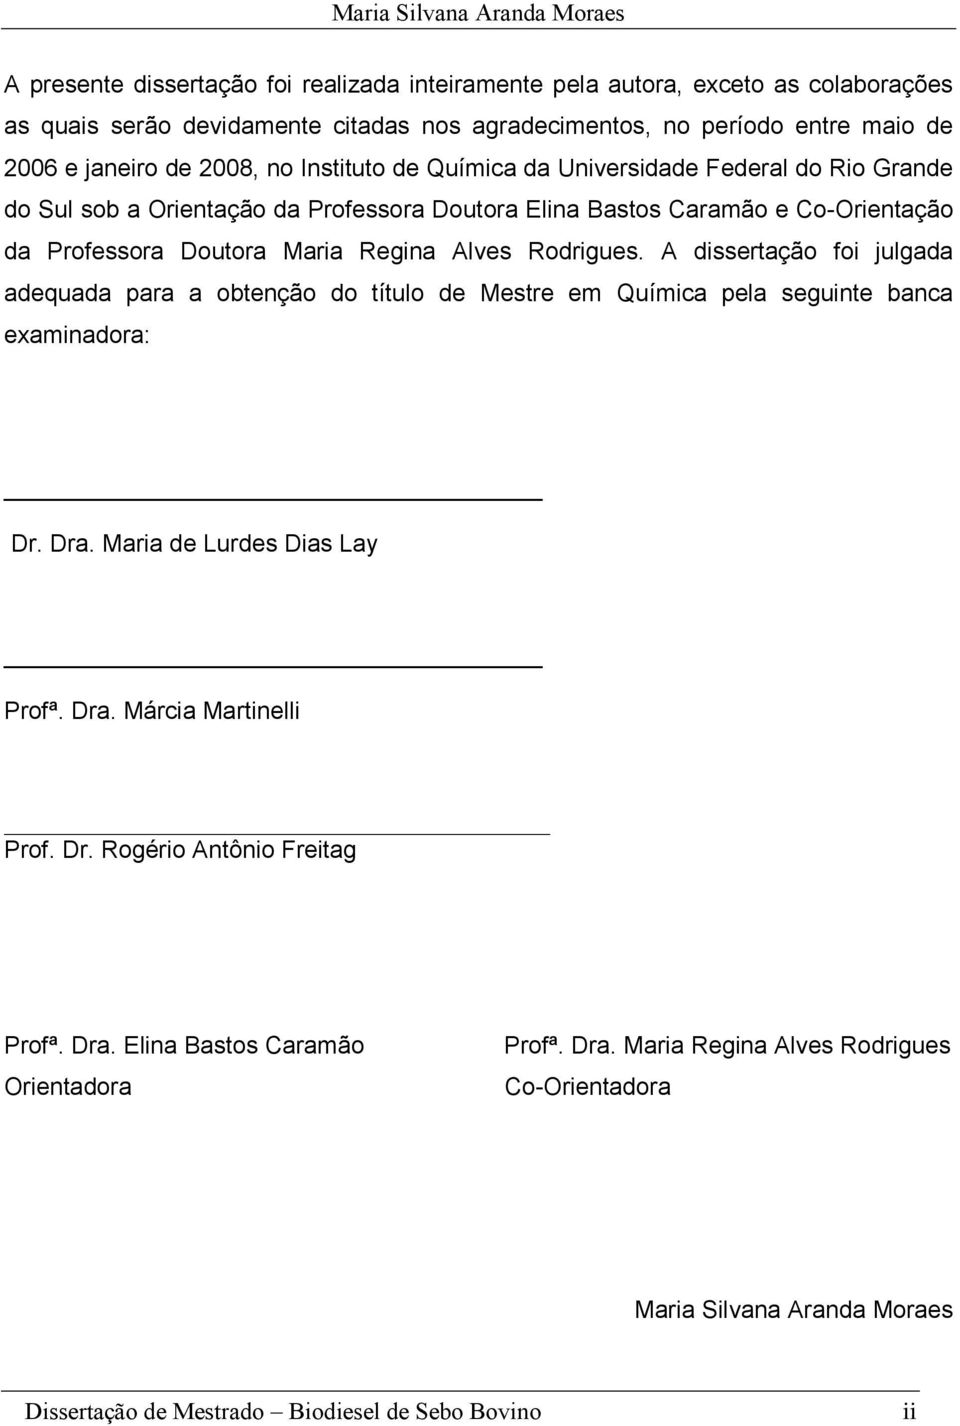 Regina Alves Rodrigues. A dissertação foi julgada adequada para a obtenção do título de Mestre em Química pela seguinte banca examinadora: Dr. Dra. Maria de Lurdes Dias Lay Profª.